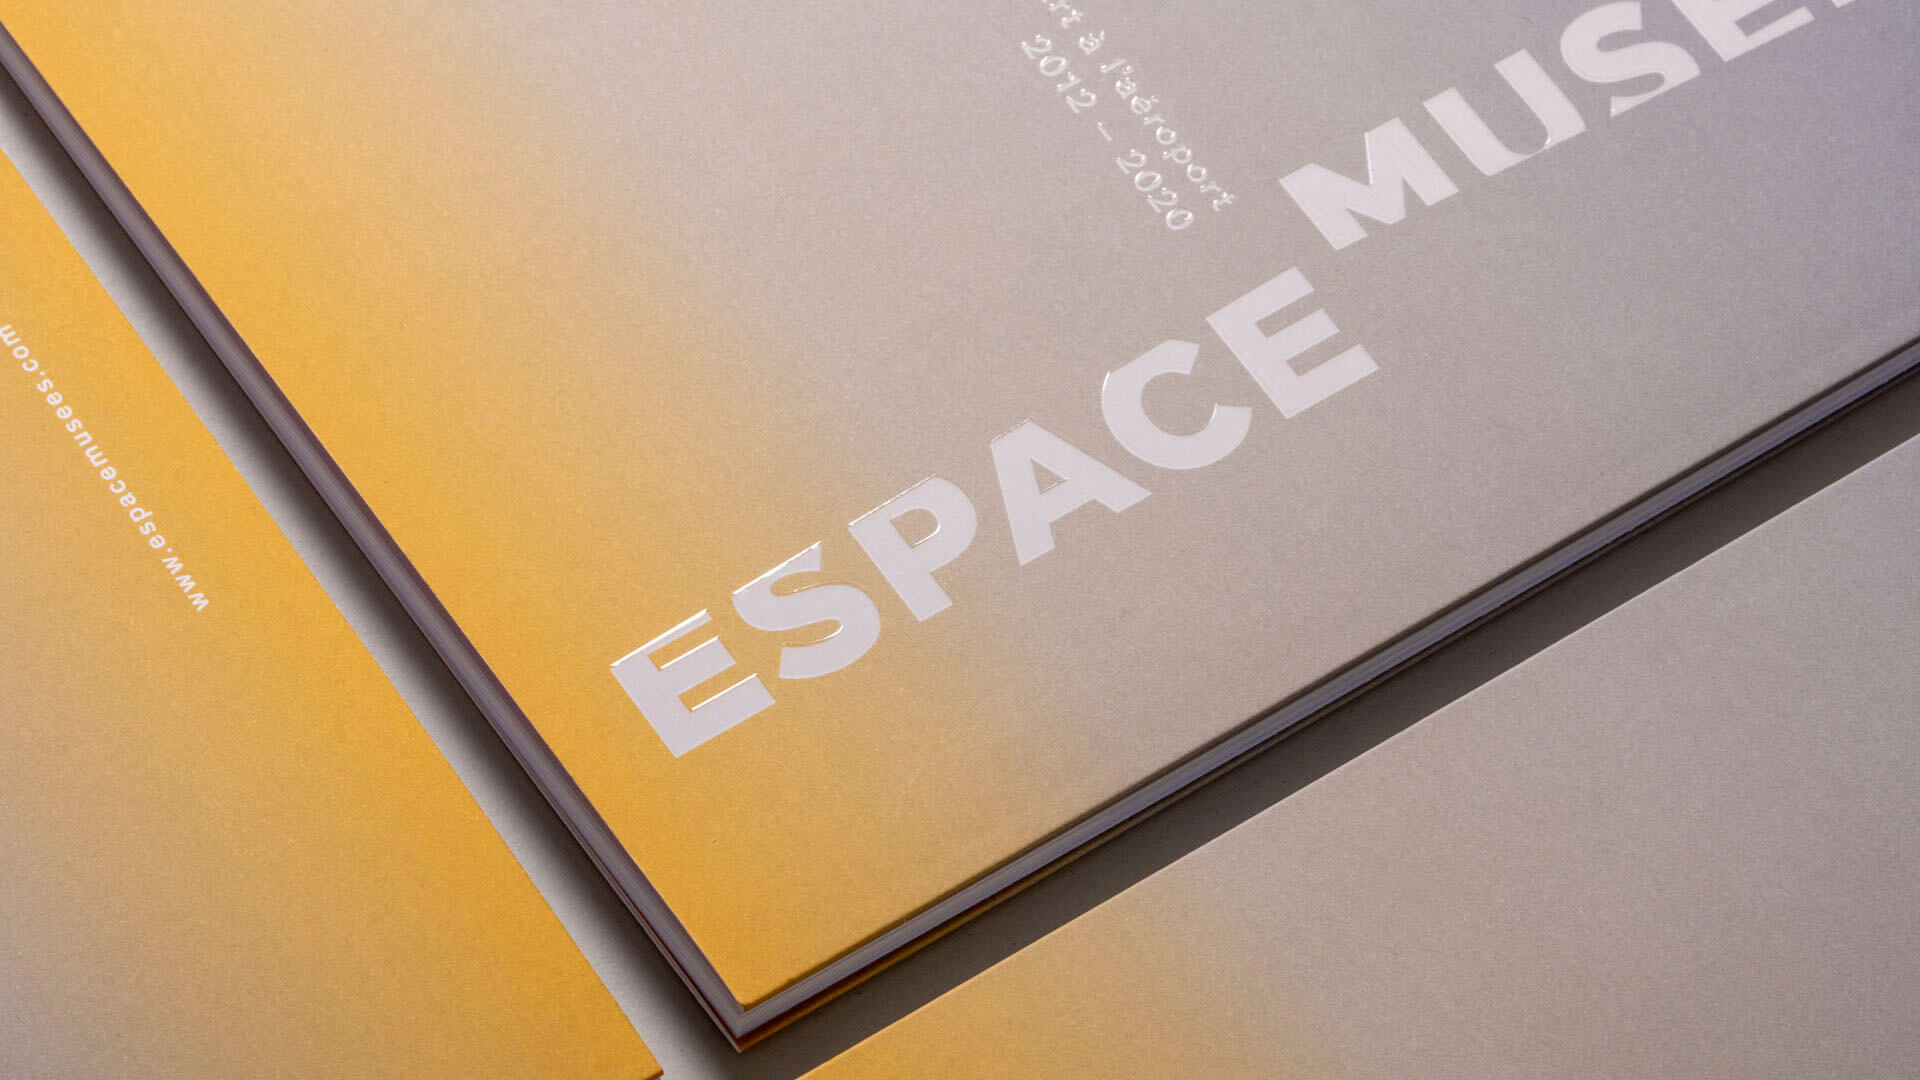 Editions-espace-musée-studio-plastac-design-graphique-916X9